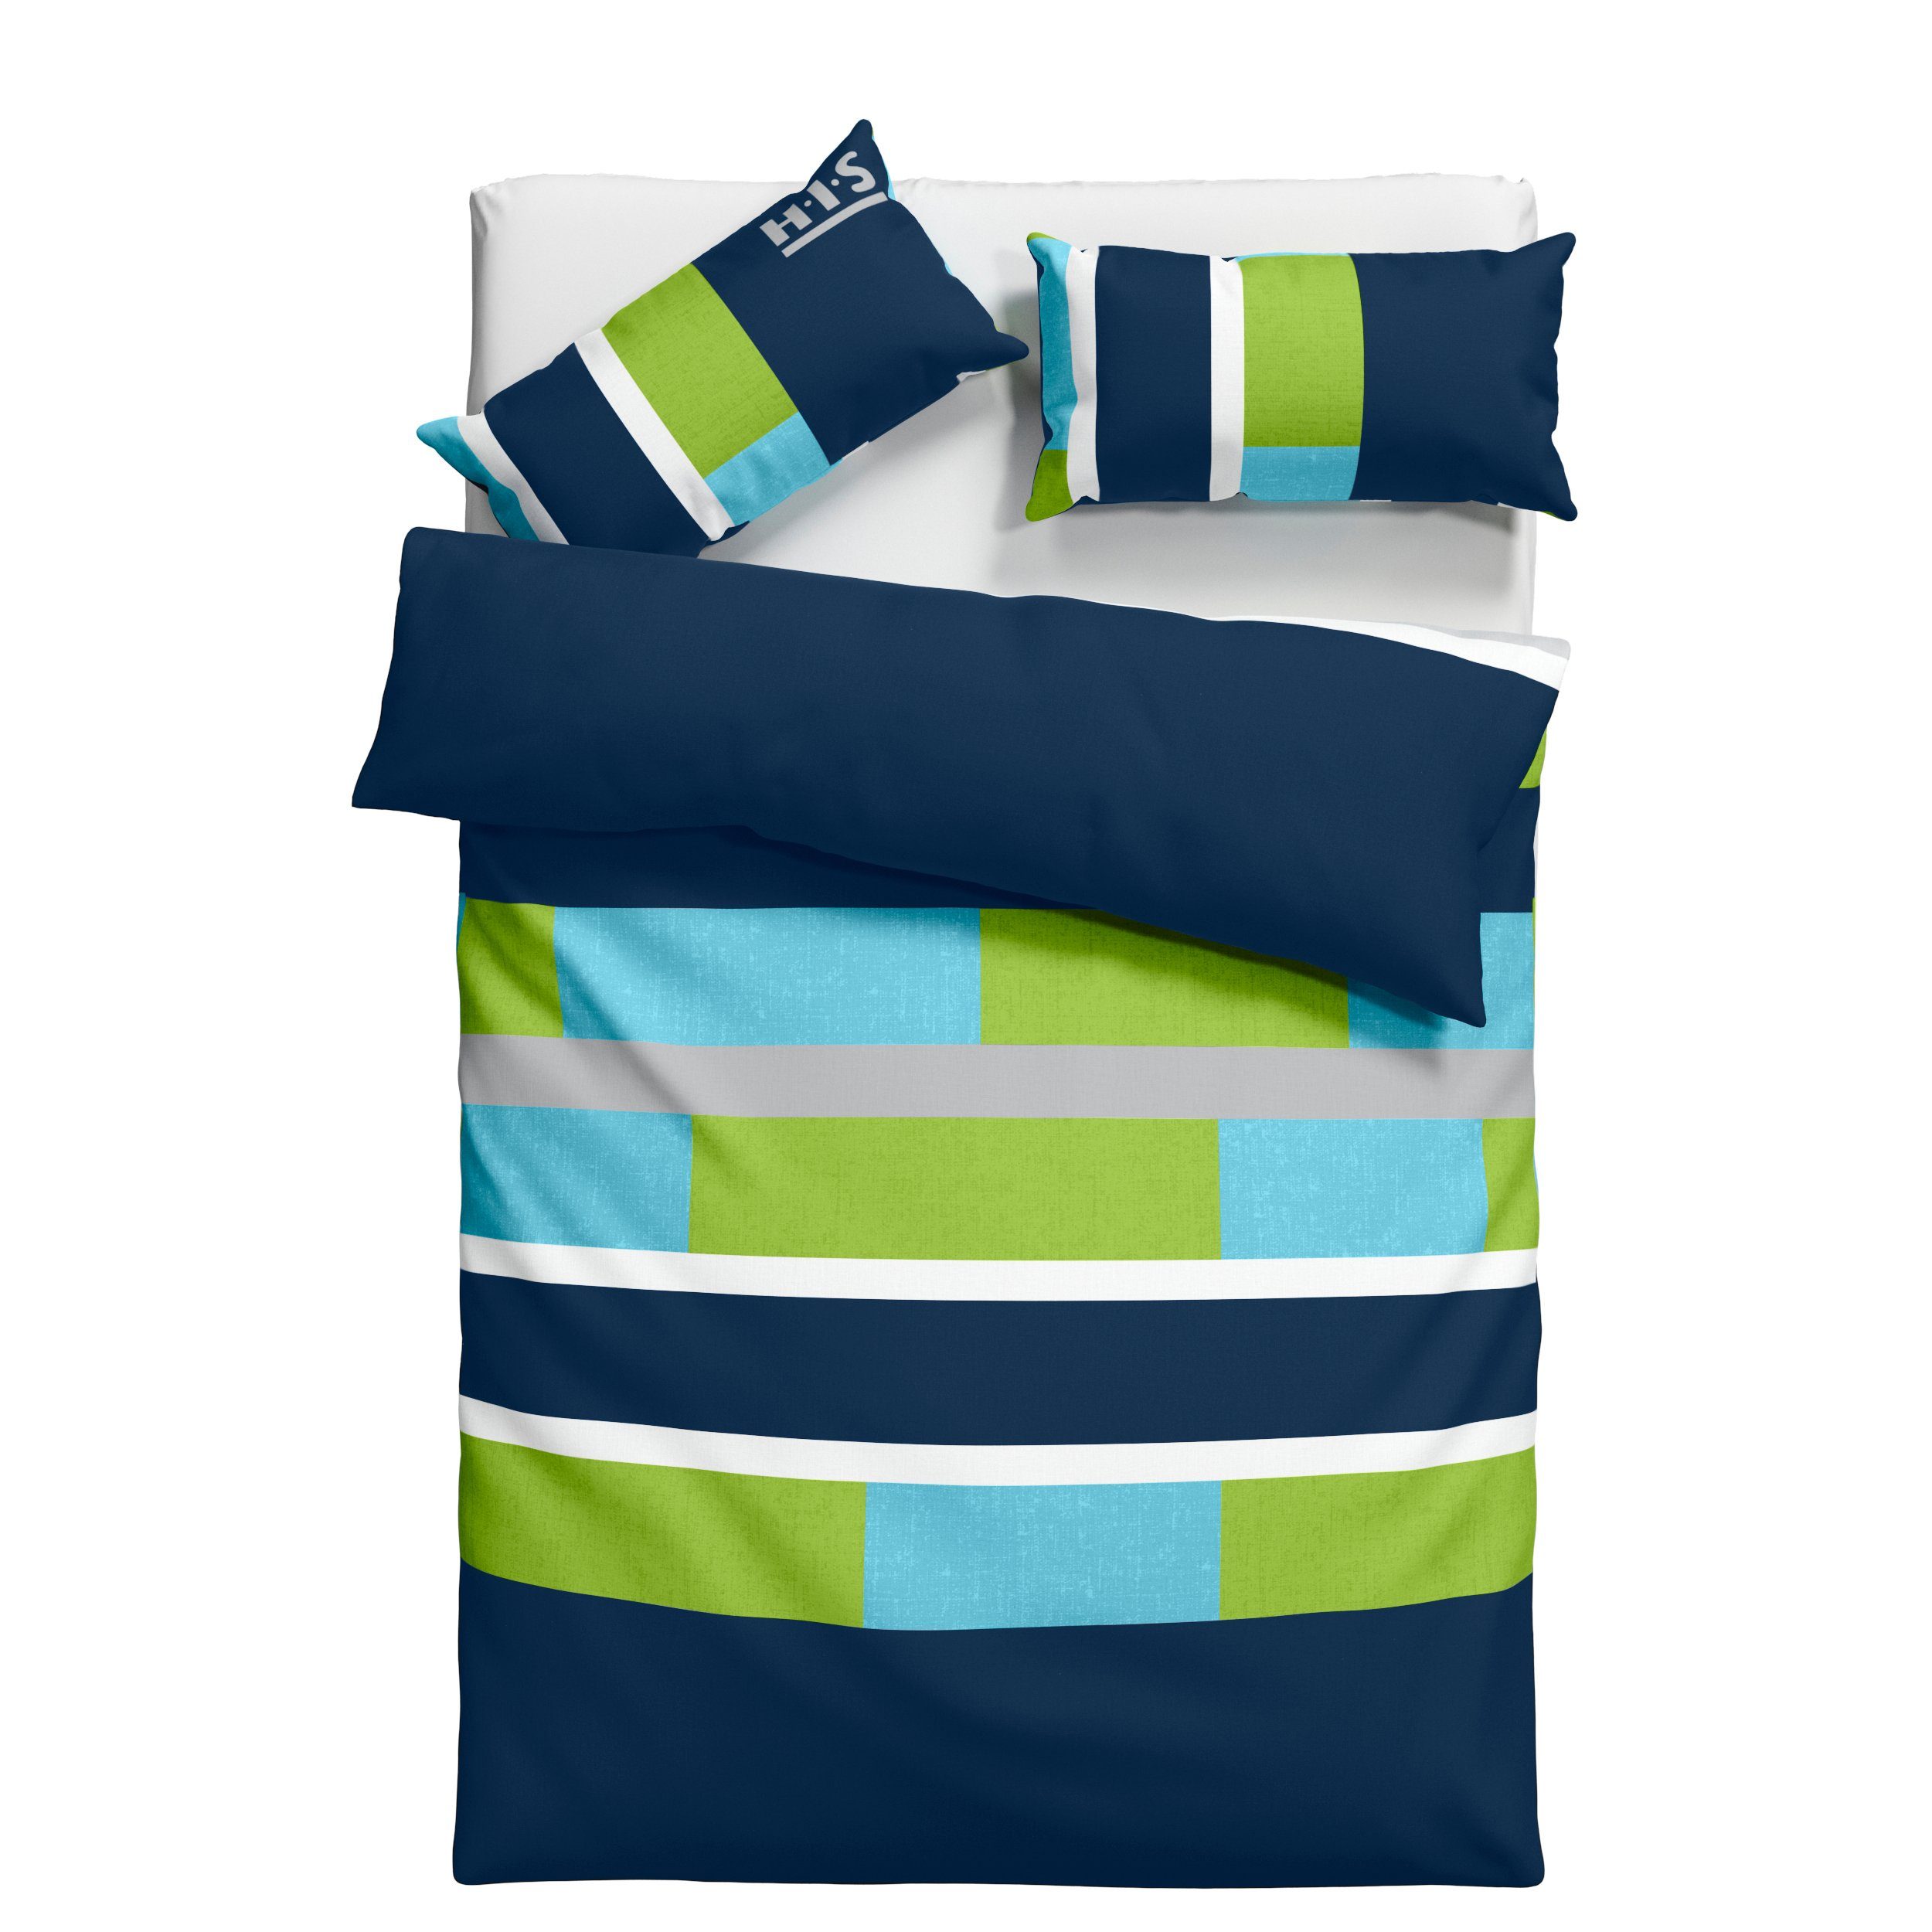 Bettwäsche Etienne in mit Bettwäsche Bettwäsche Linon, cm, H.I.S, 2 aus Gr. blau/grün zeitlose teilig, 135x200 155x220 Streifen-Design Baumwolle, oder